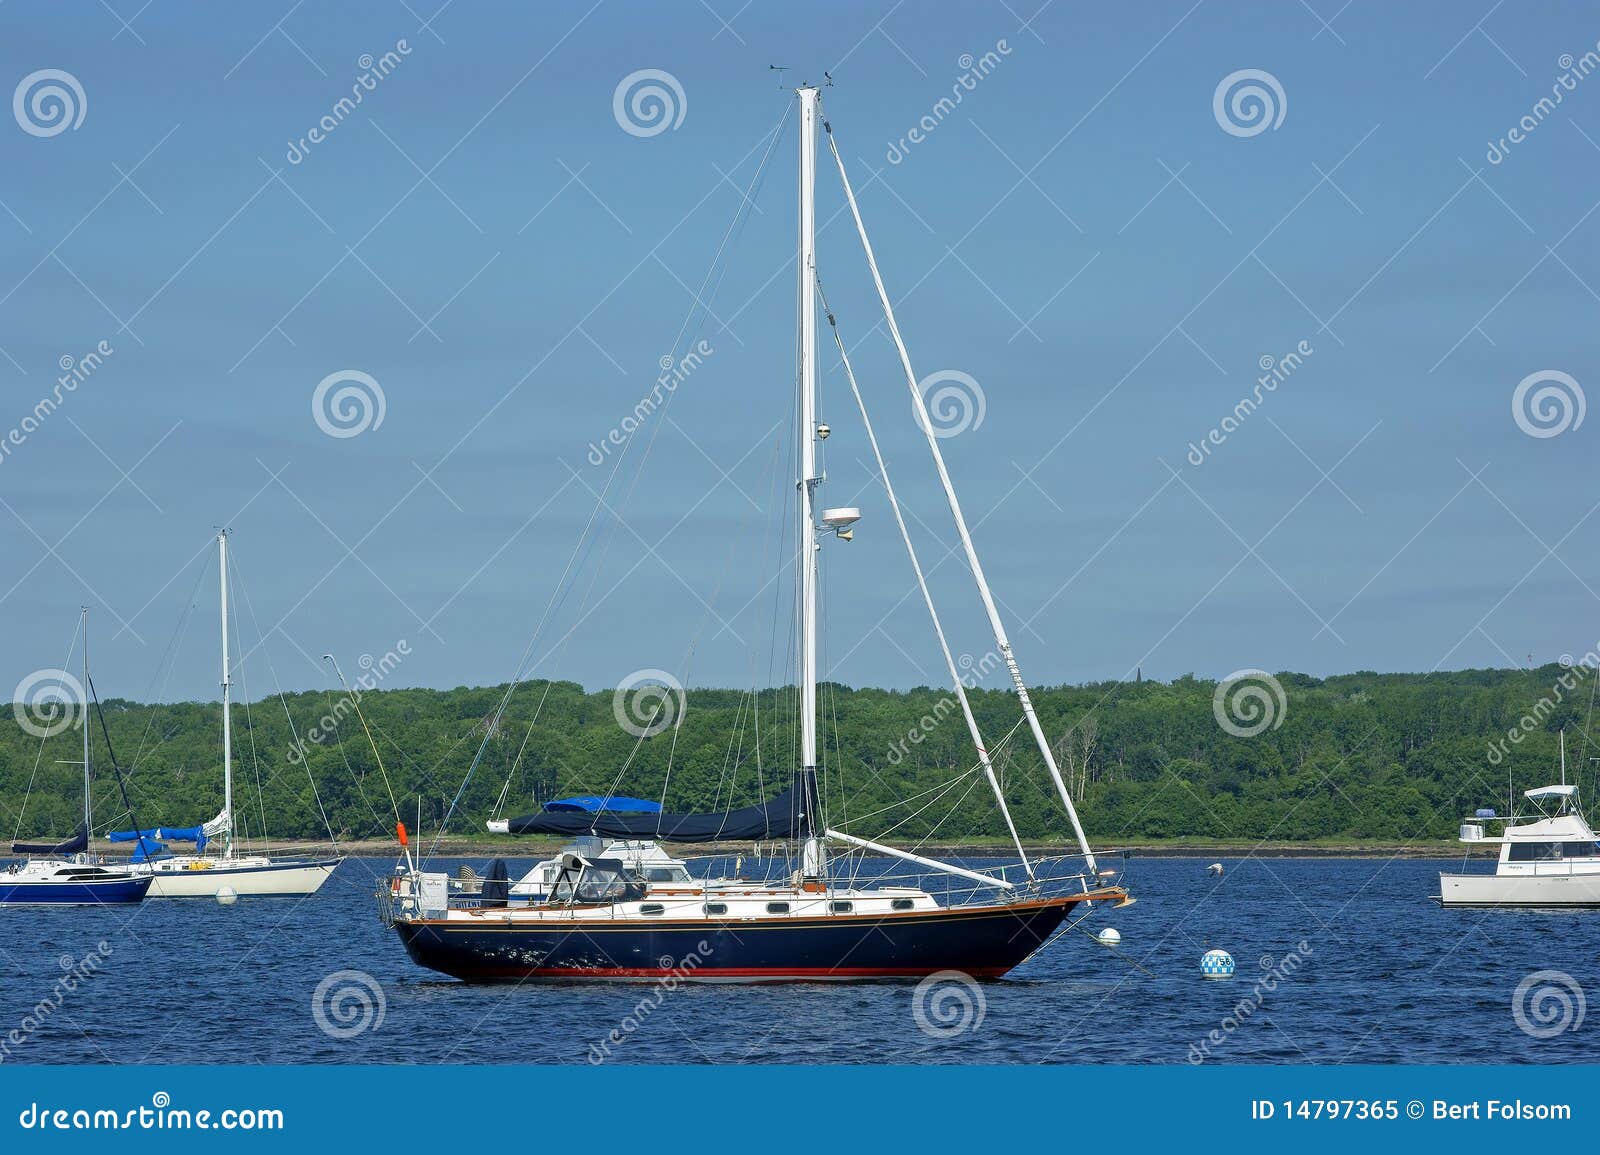 Blue Hulled Sailboat At Mooring Royalty Free Stock Photo - Image ...